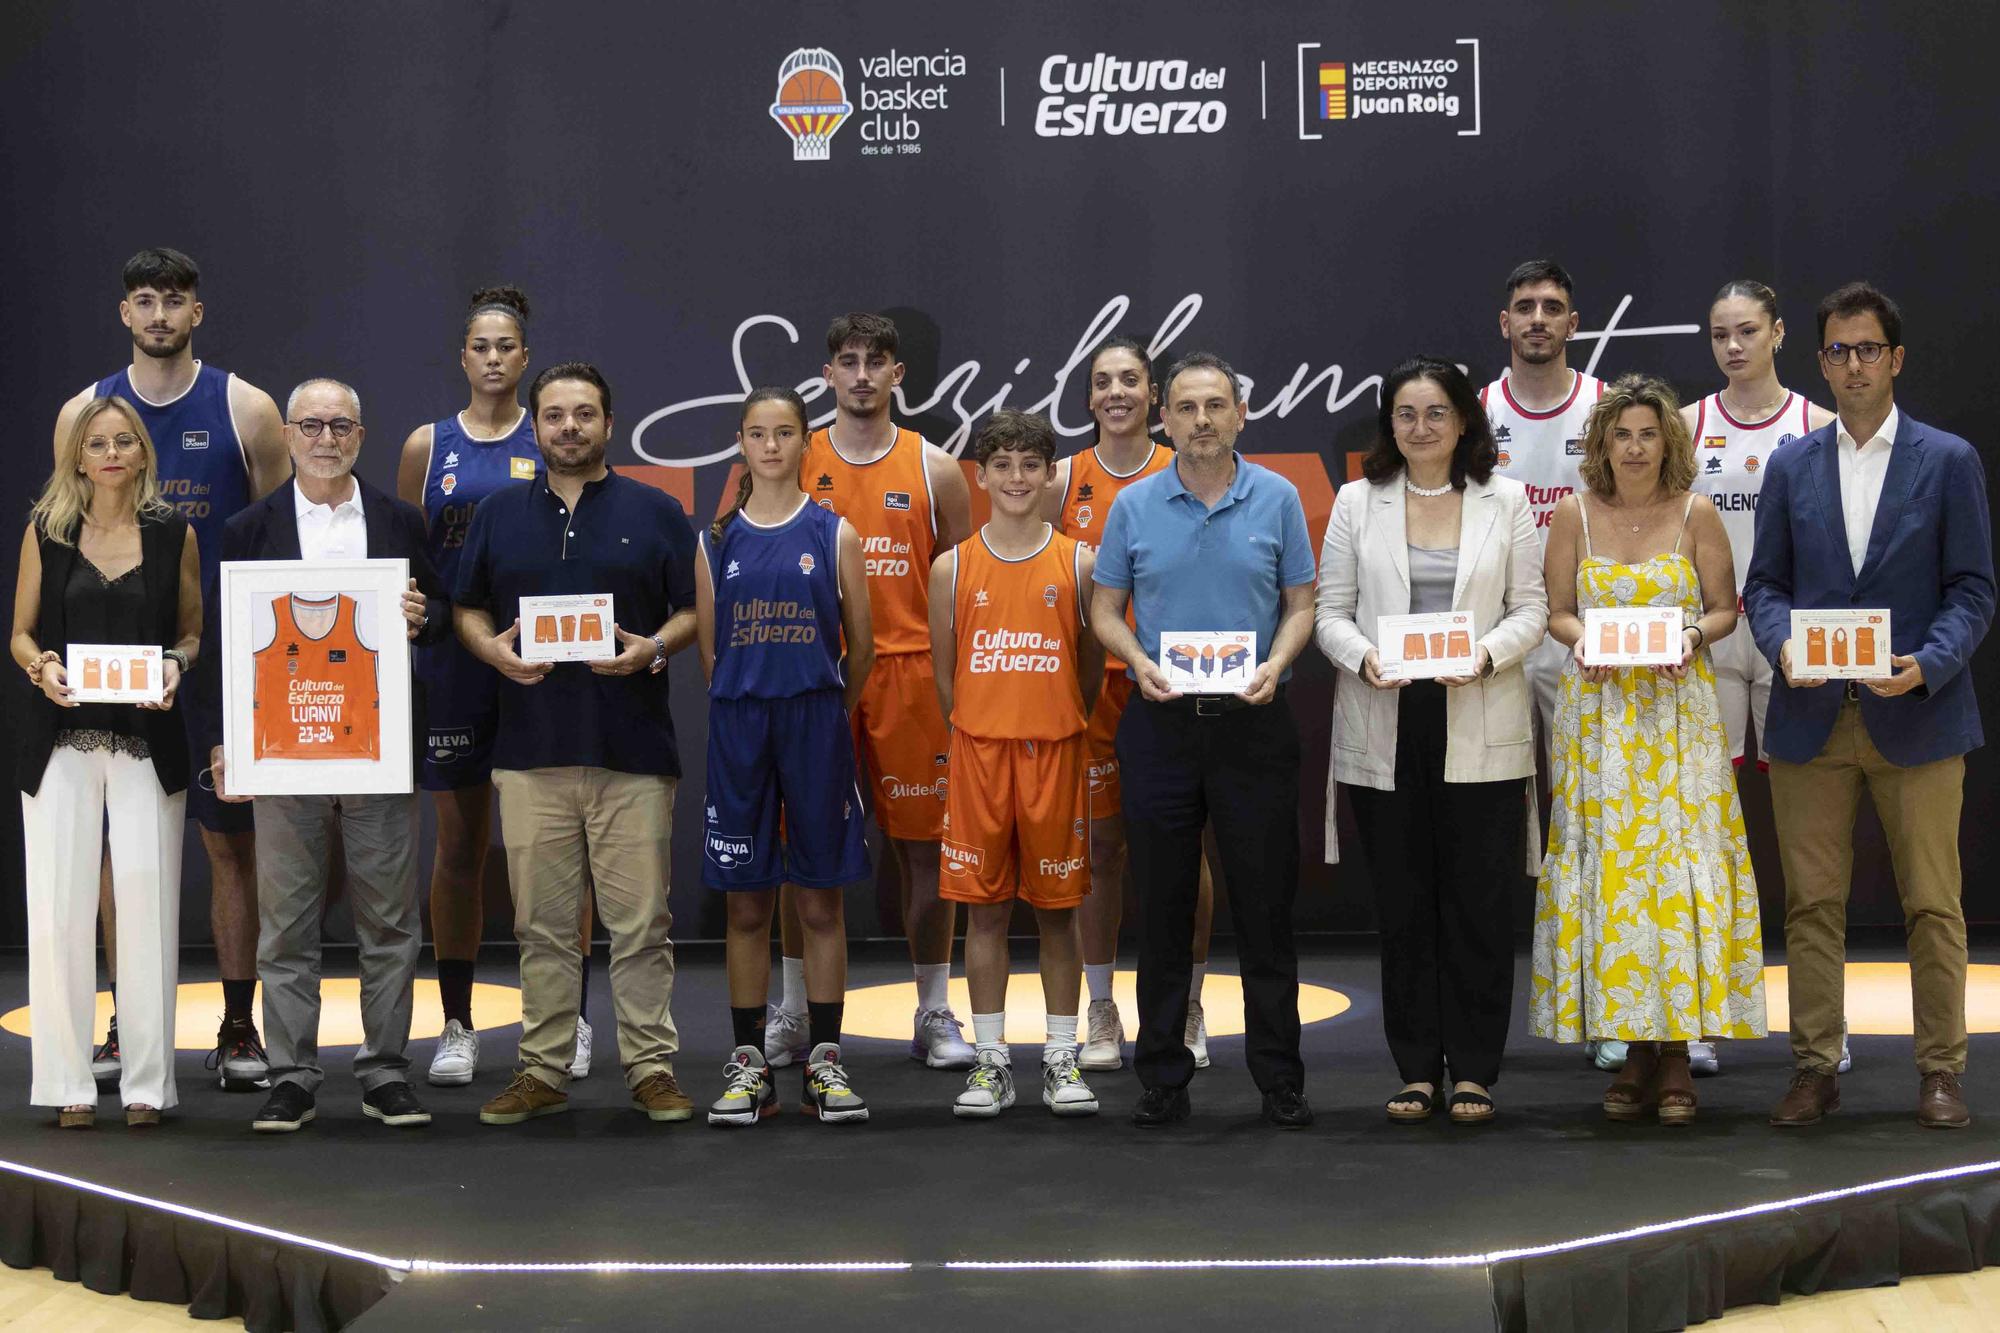 Presentación de los equipajes del Valencia Basket